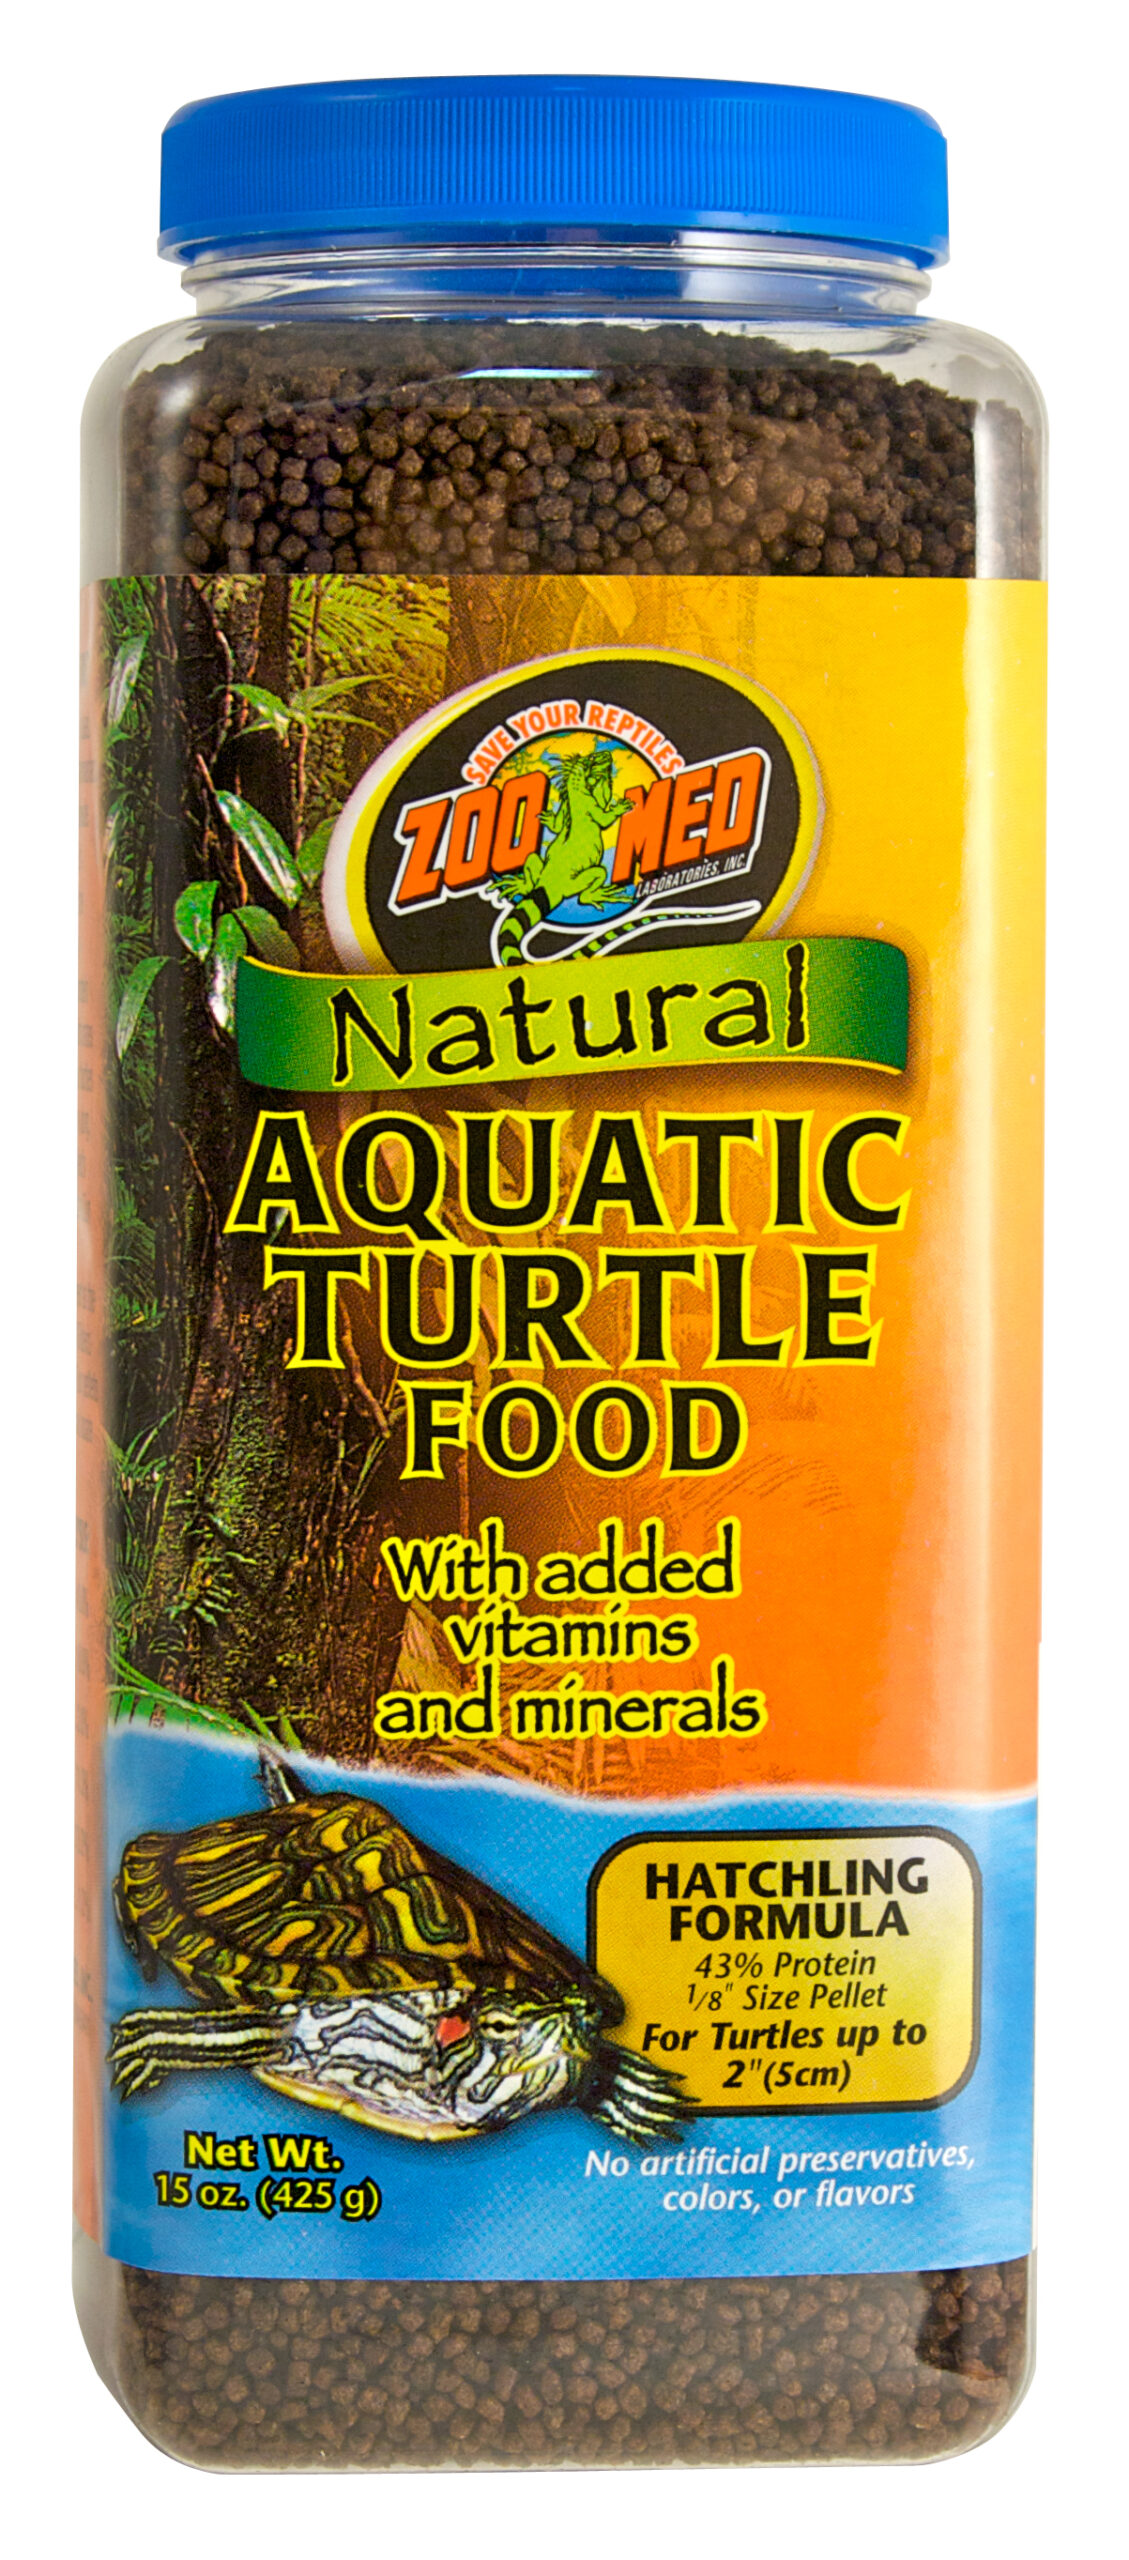 Aquatic turtle food Hatchling formula